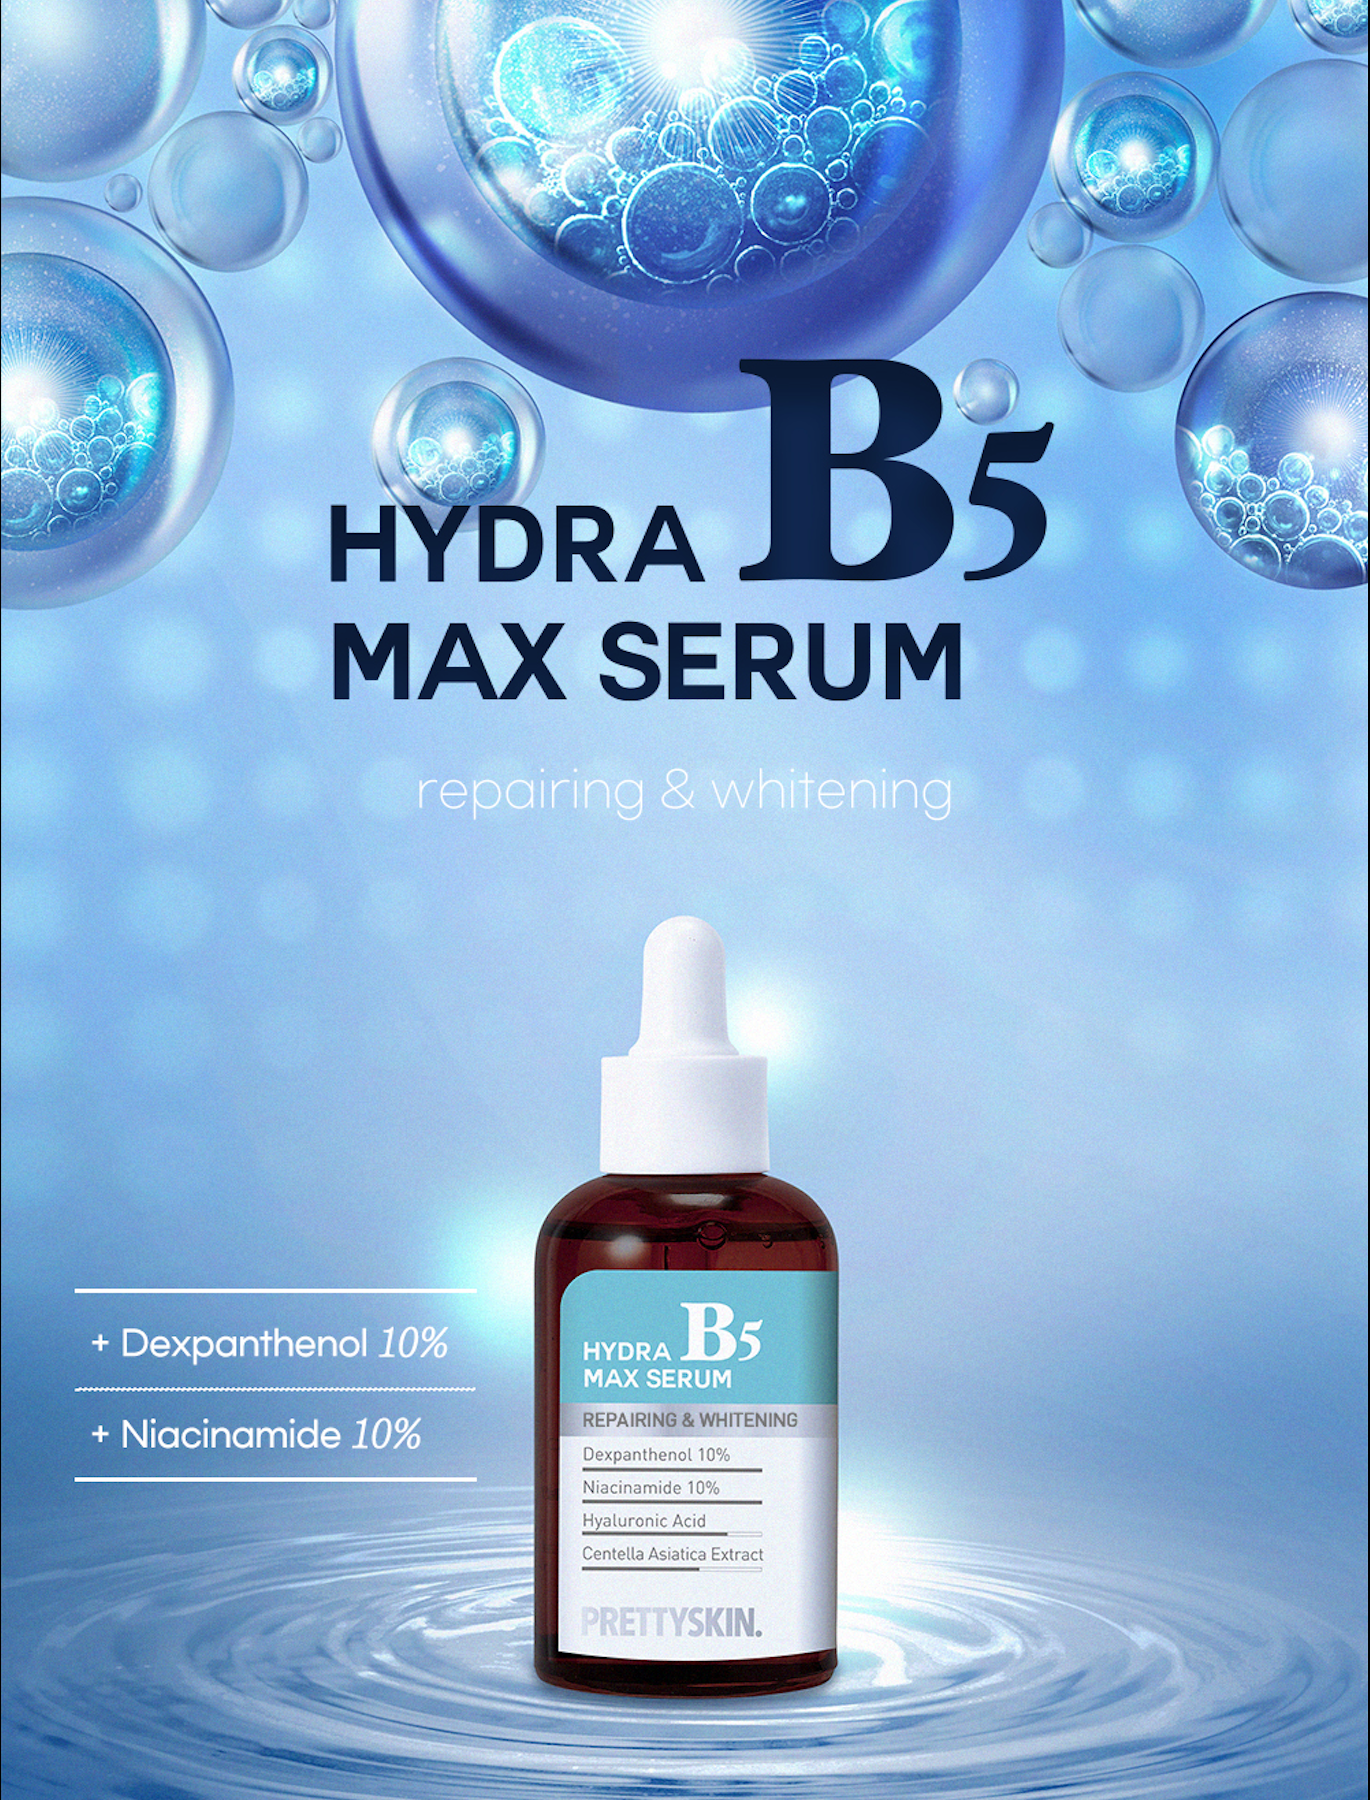 Hydra B5 Max Serum